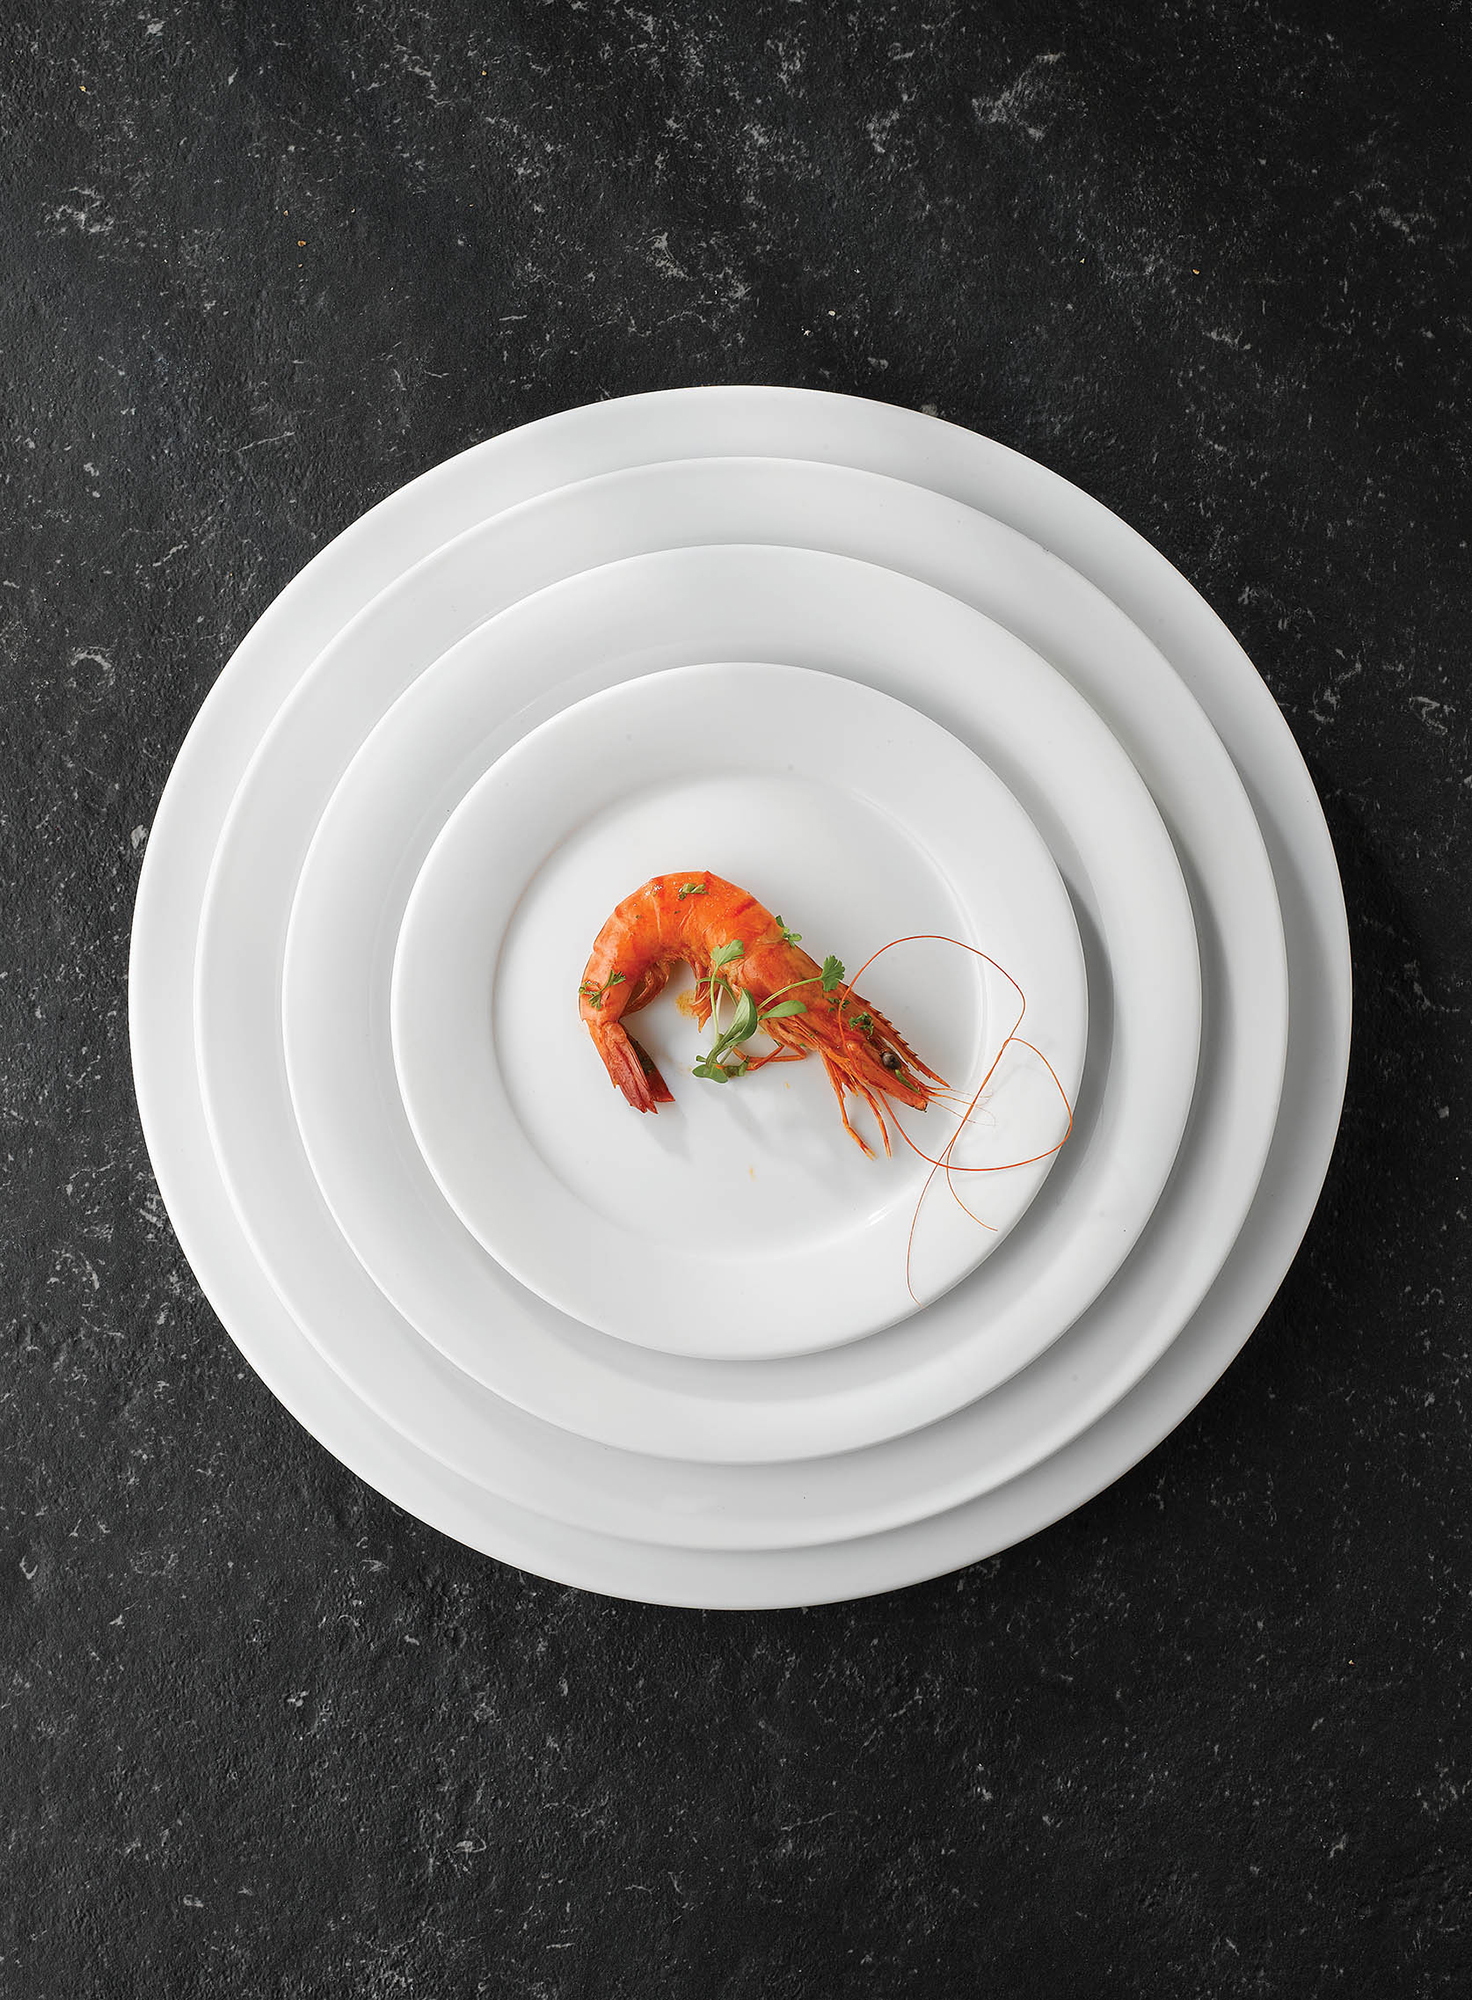 Churchill Art De Cuisine Menu Porcelain Platte Rechteckig 24,5X16Cm, 6 Stück, Weiß